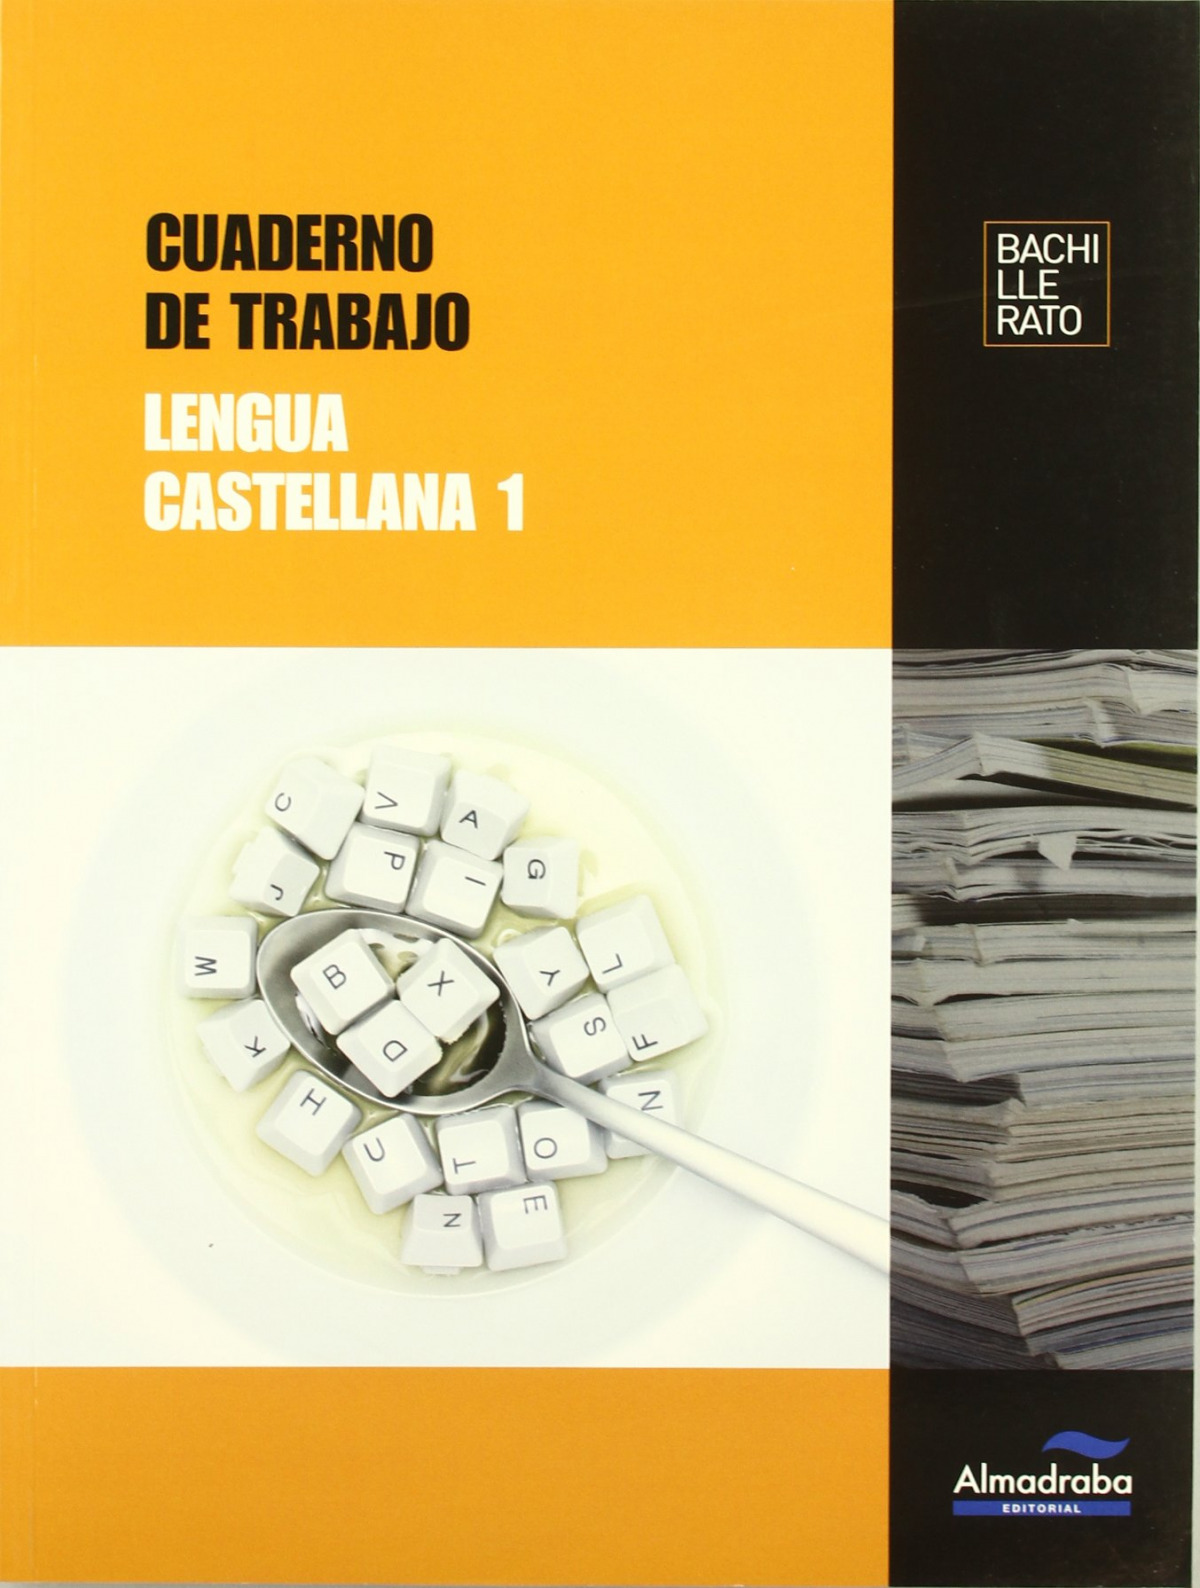 Cuaderno de trabajo Lengua castellana 1 - Fernández Villarroel, David/Huerto Castelló, José Javier/Rodríguez Castillejo, Dolores